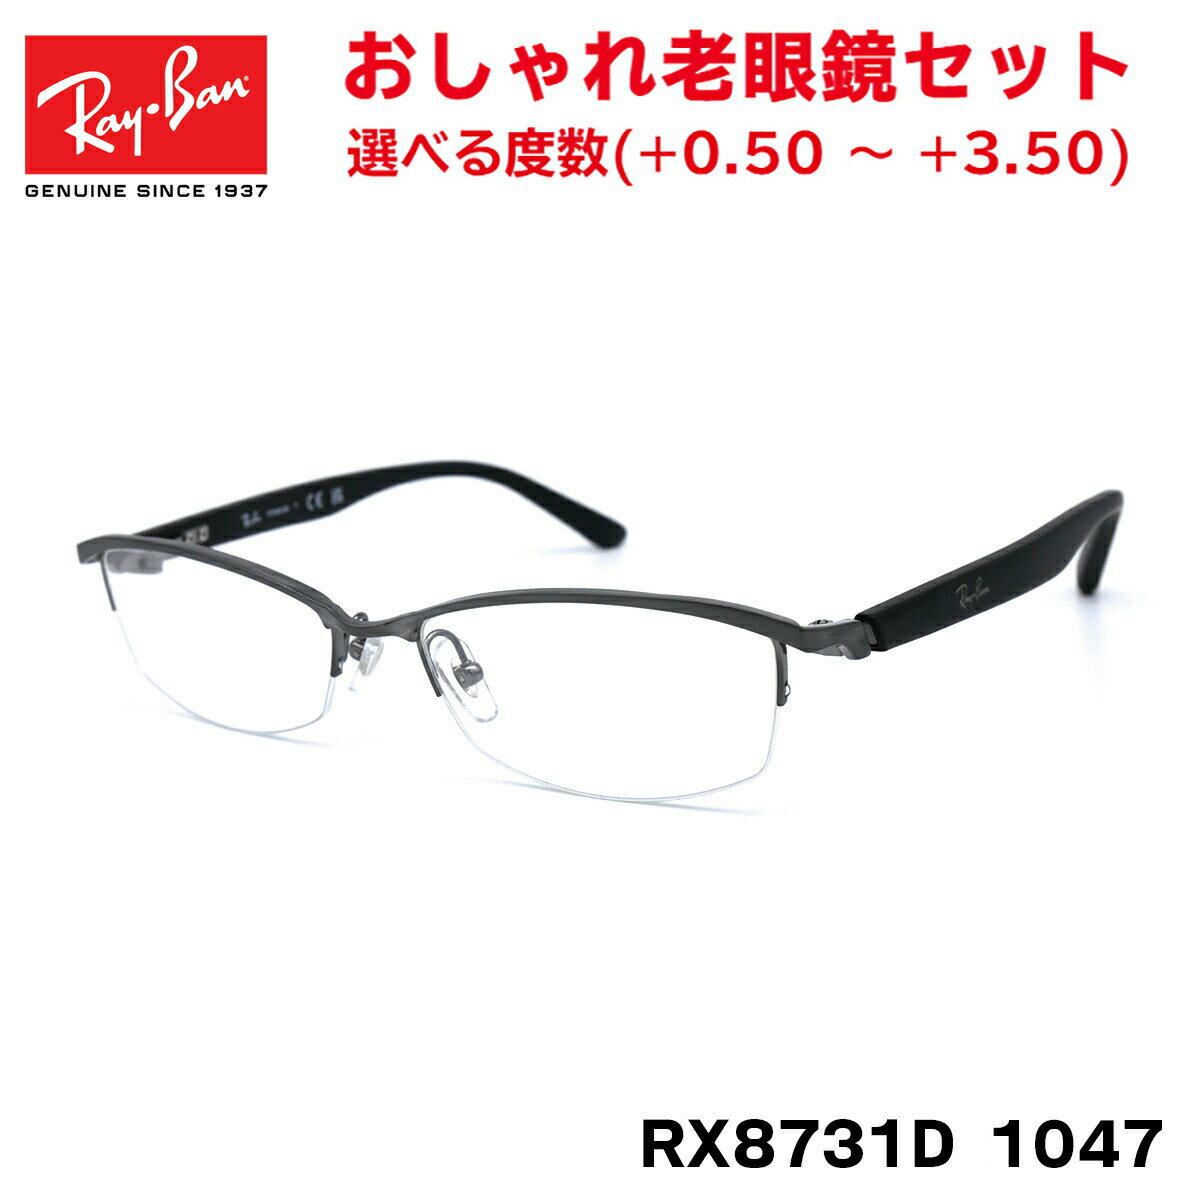 レイバン 老眼鏡 Ray-Ban RX8731D (RB8731D) 1047 55サイズ アジアンフィット アジアモデル